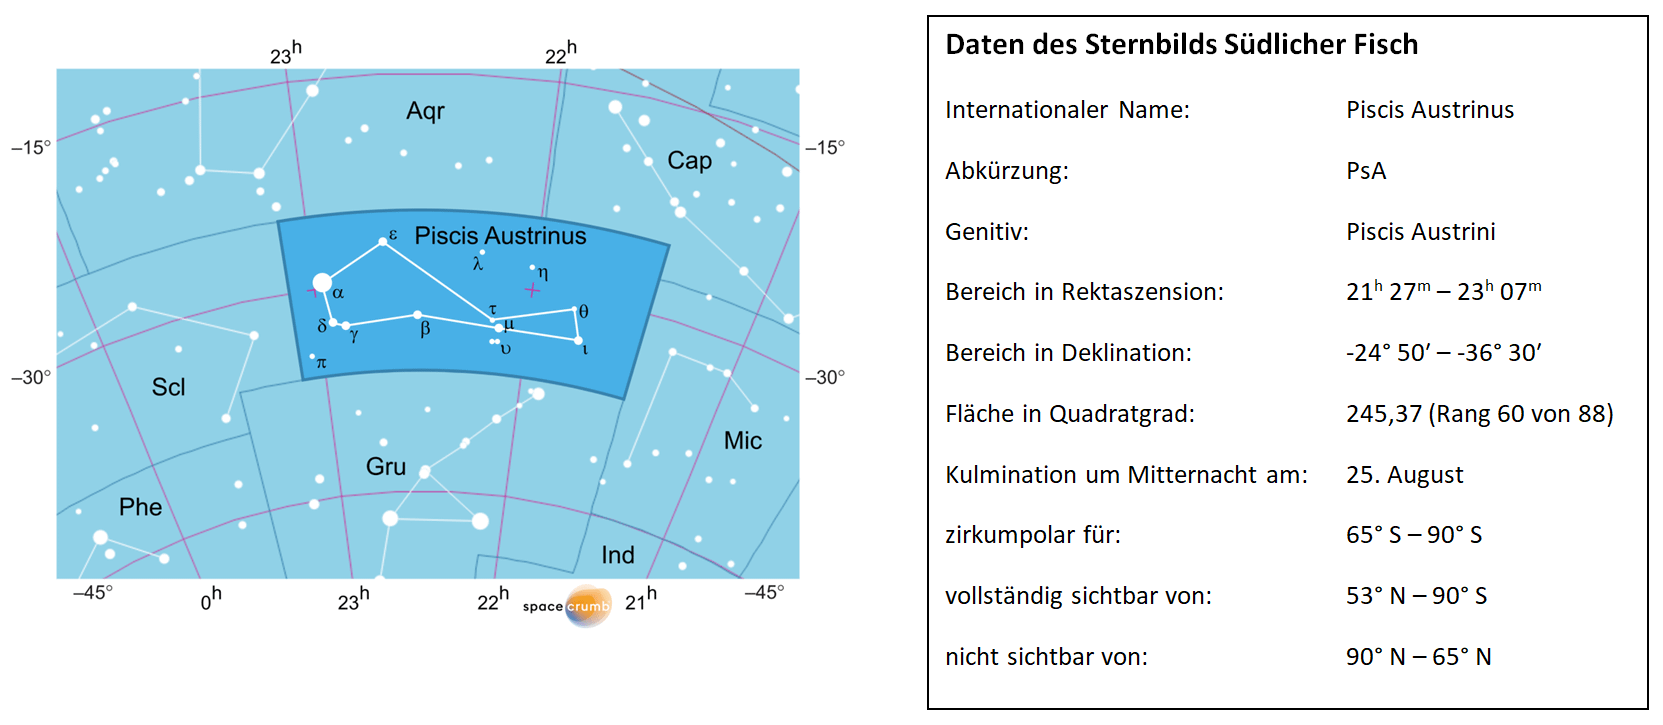 Links zeigt eine mit Koordinaten versehene Karte eines Himmelsausschnitts weiße Sterne auf hellblauem Hintergrund. Die Fläche, die das Sternbild Südlicher Fisch einnimmt, ist dunkelblau hervorgehoben. Eine Tabelle rechts gibt wichtige Daten des Sternbilds Südlicher Fisch an.